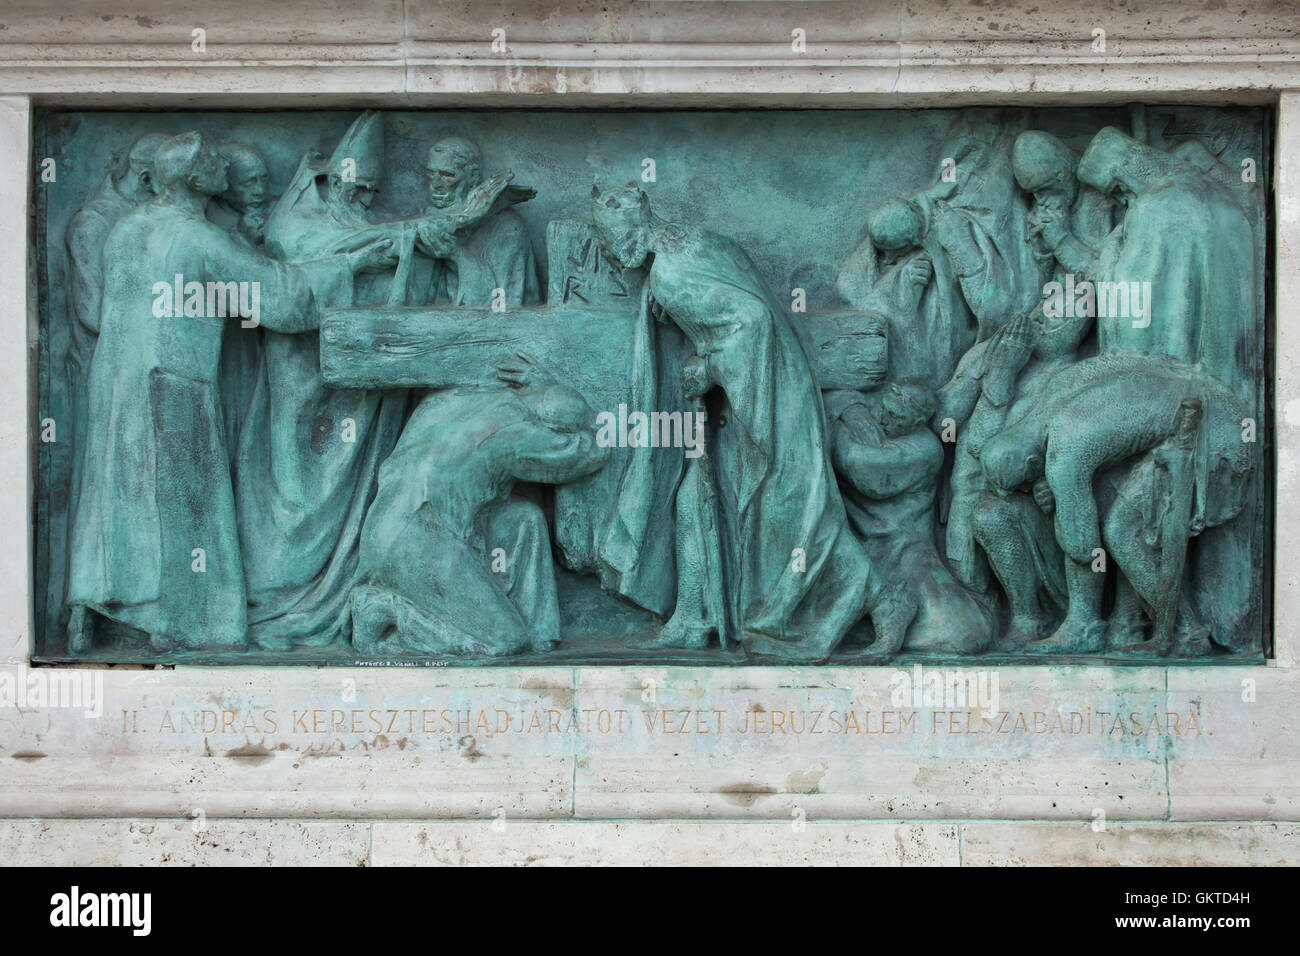 König Andrew II von Ungarn führt der fünfte Kreuzzug ins Heilige Land 1217 1218. Bronzerelief von ungarischen Bildhauer György Zala auf dem Millennium-Denkmal in der Heldenplatz in Budapest, Ungarn. Stockfoto